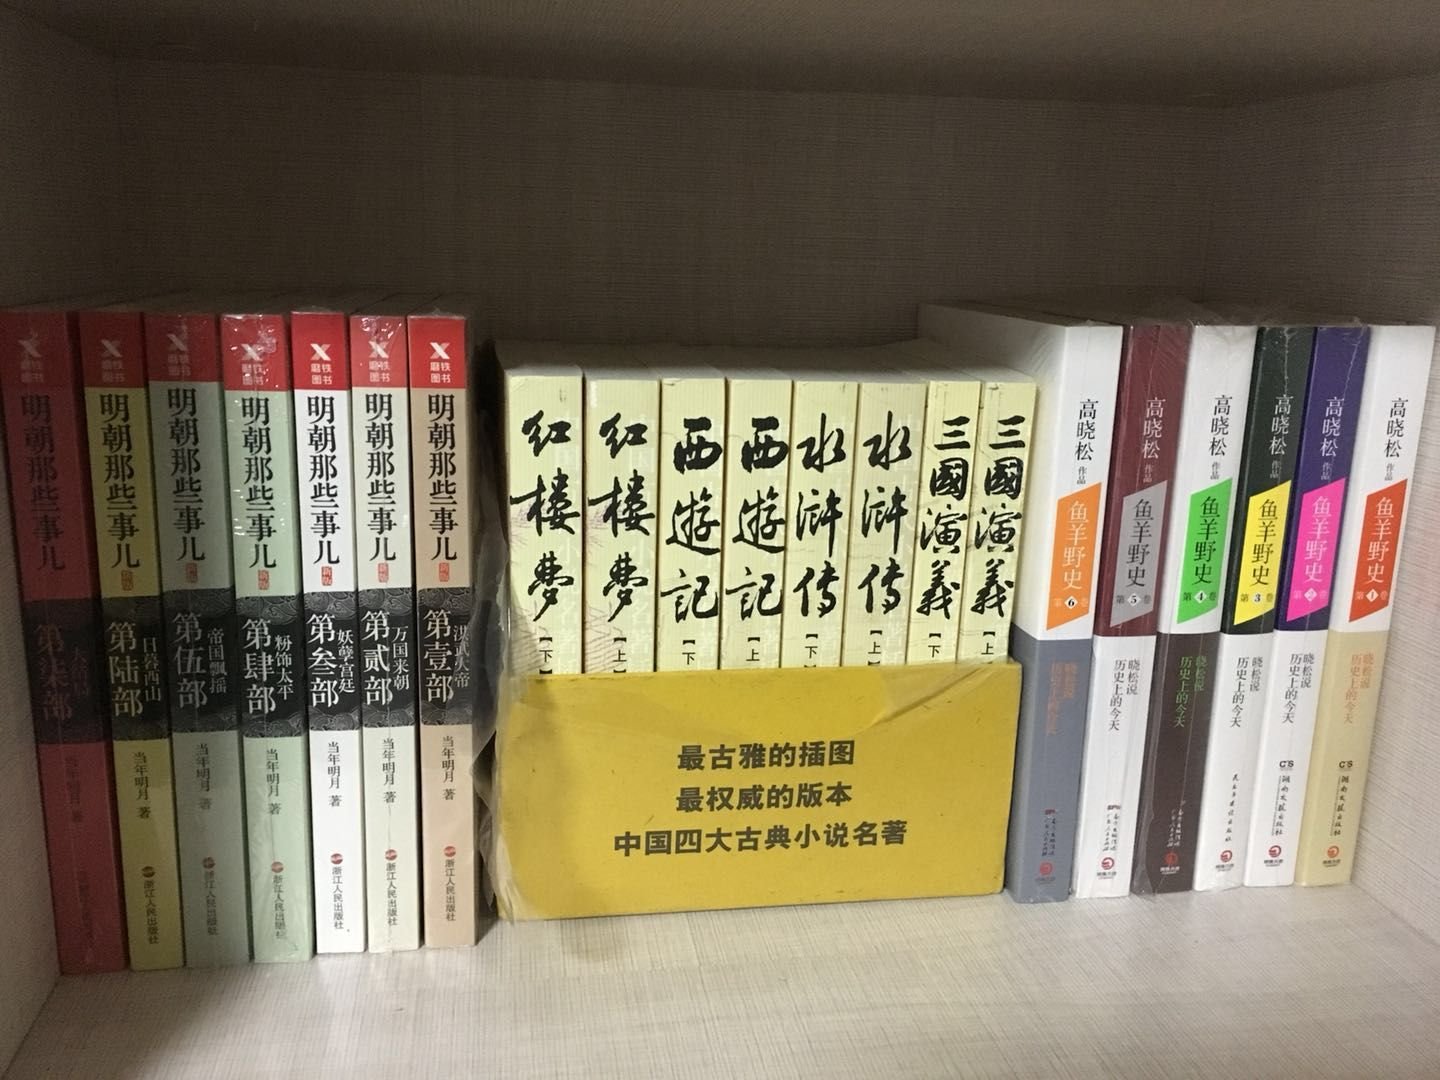 618来了，屯点书，慢慢看，传统文化的书中华书局还是很好的，弄几本看看